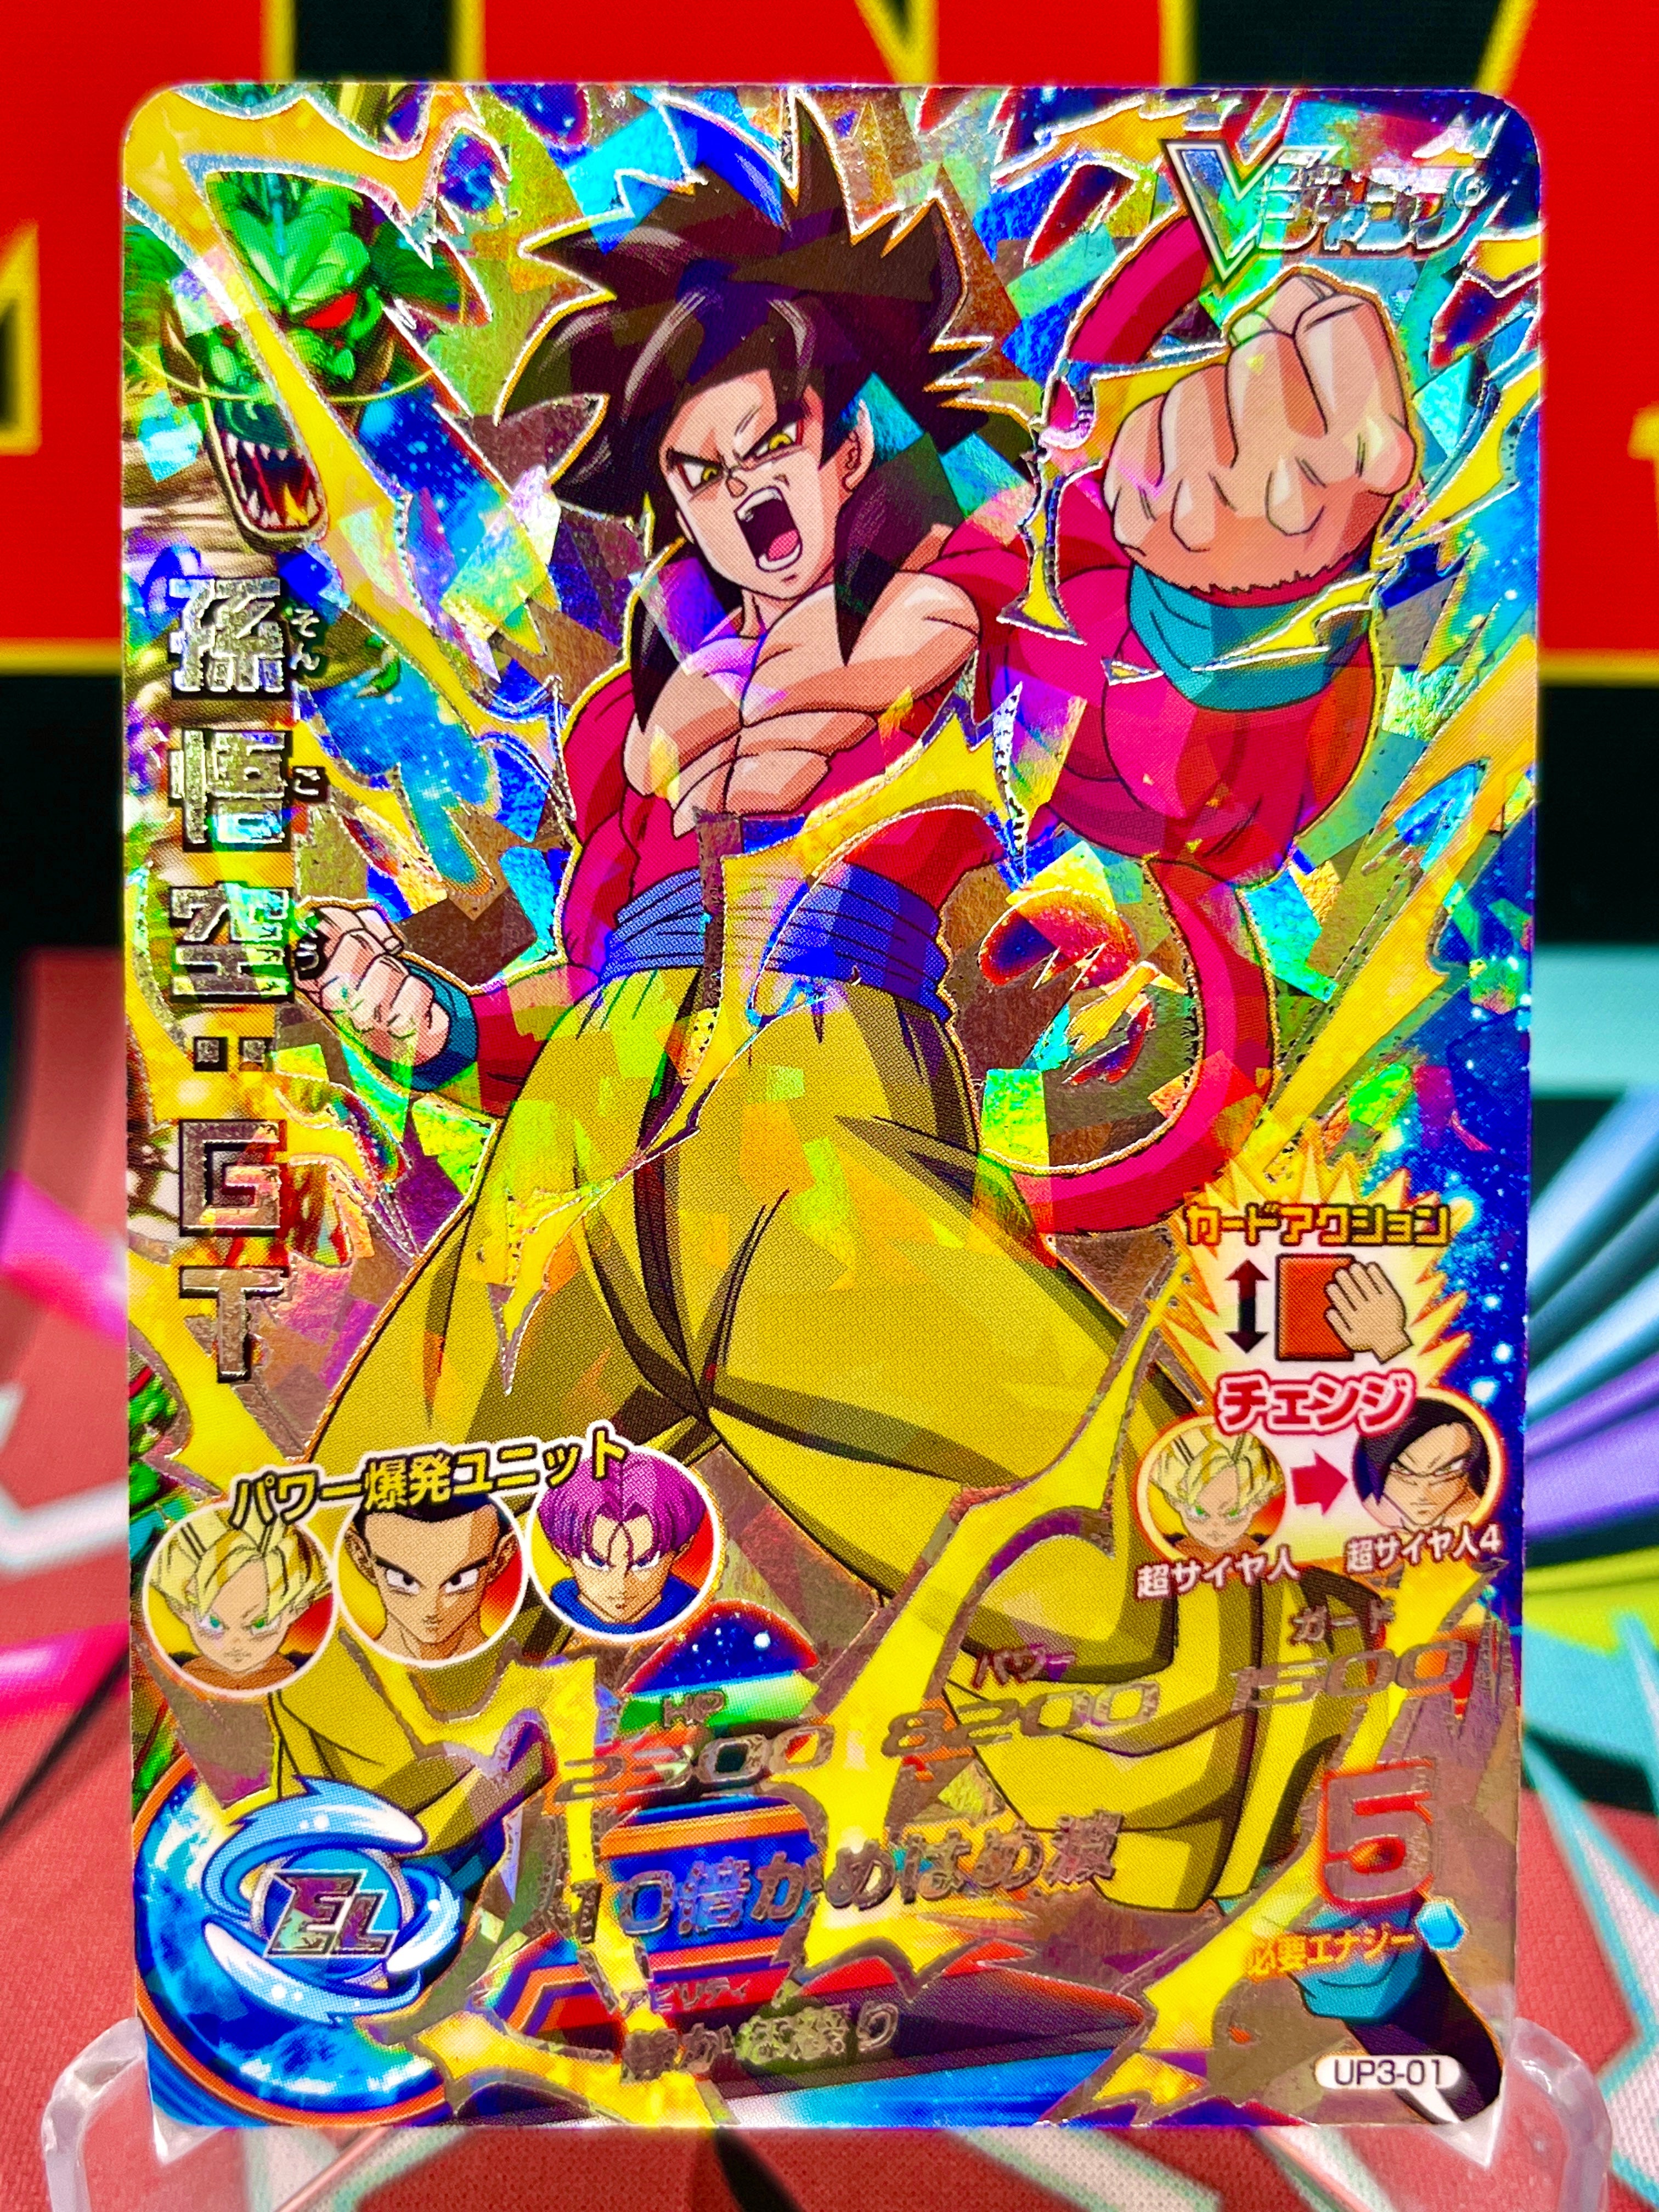 UP3-01 Son Goku: GT Vintage (VJump) Promo (2013)